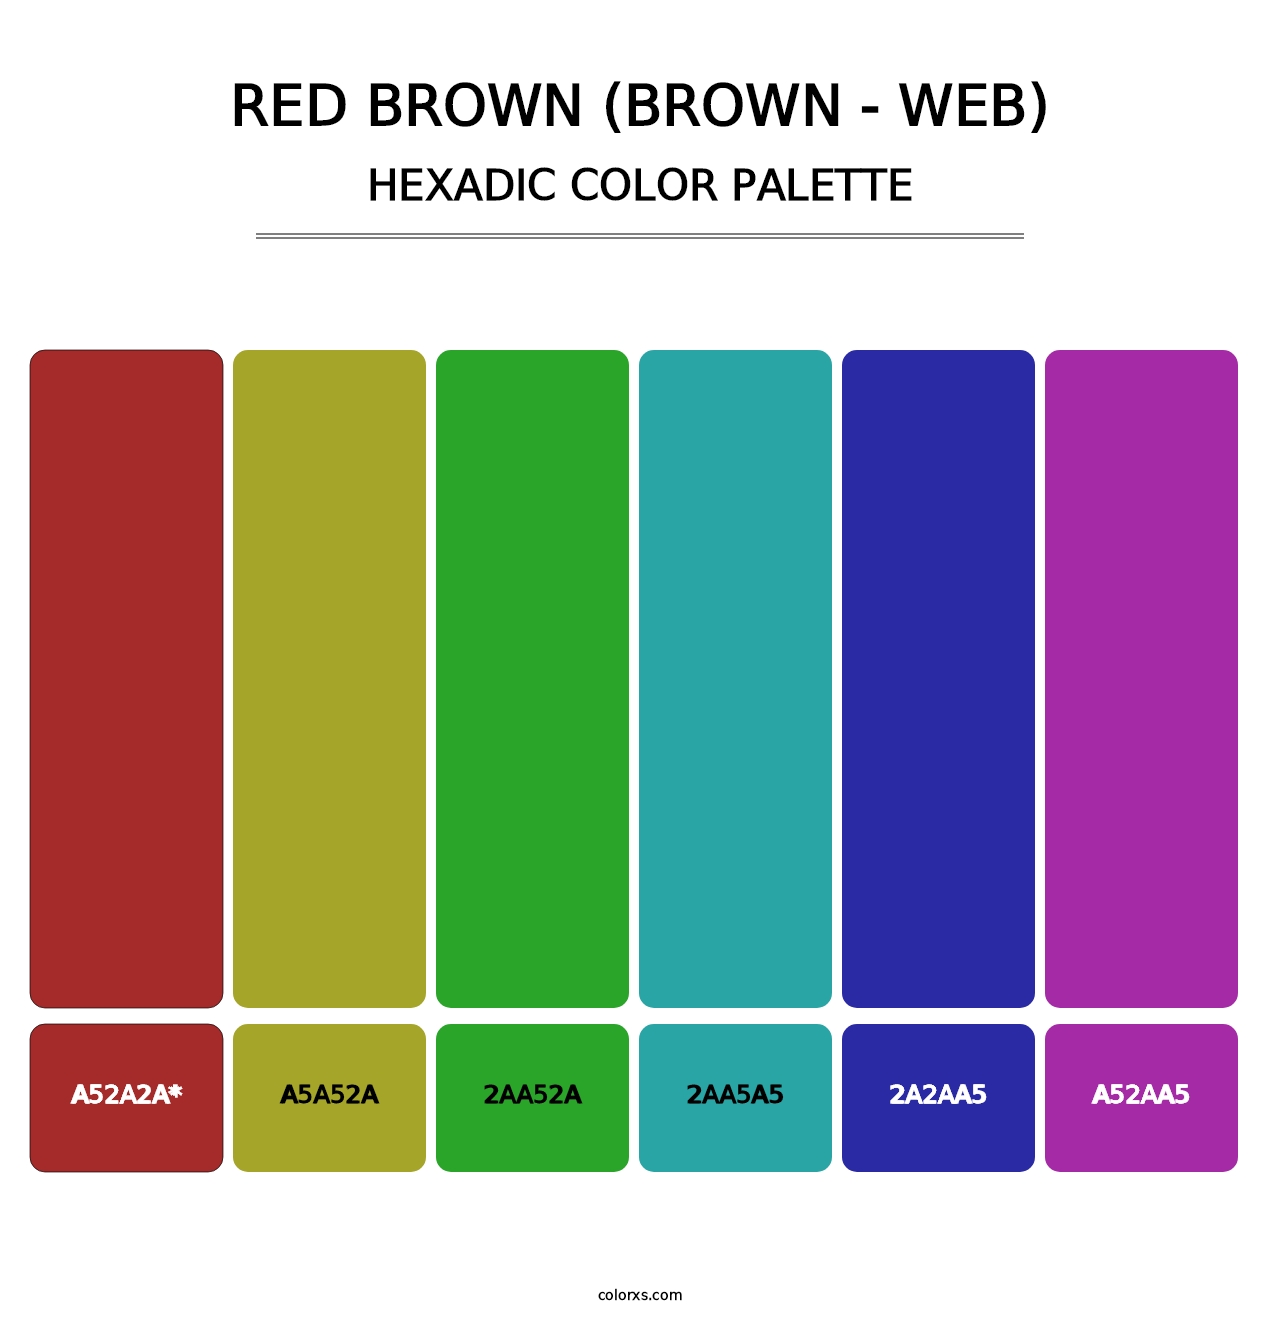 Red Brown (Brown - Web) - Hexadic Color Palette